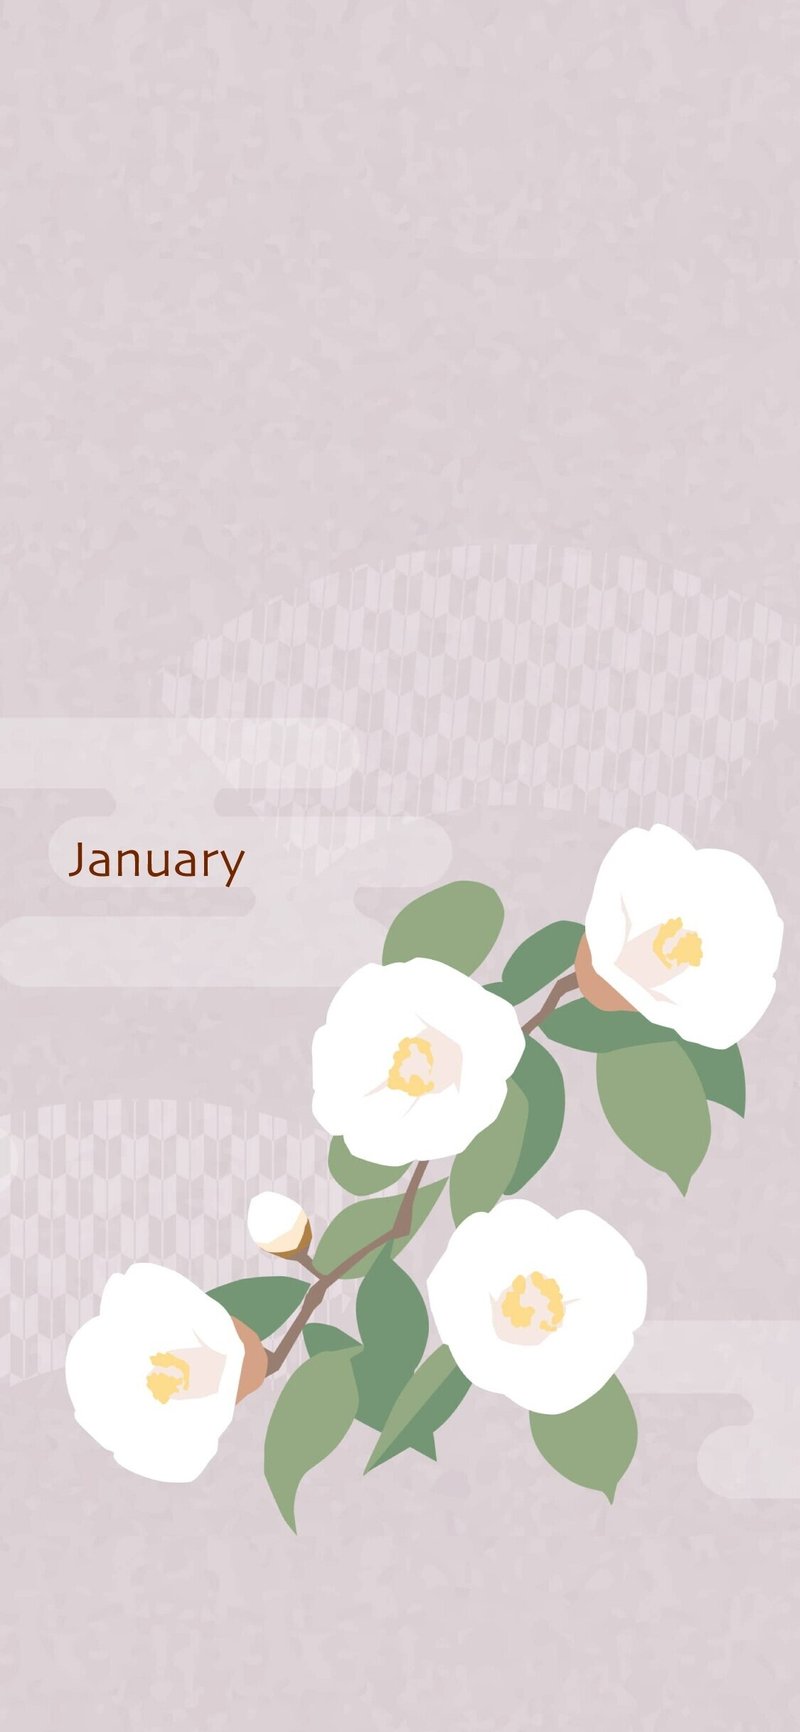 かわいい シンプルなカレンダーアプリ Decoカレンダーの使い方と特徴について Yuuchang Note